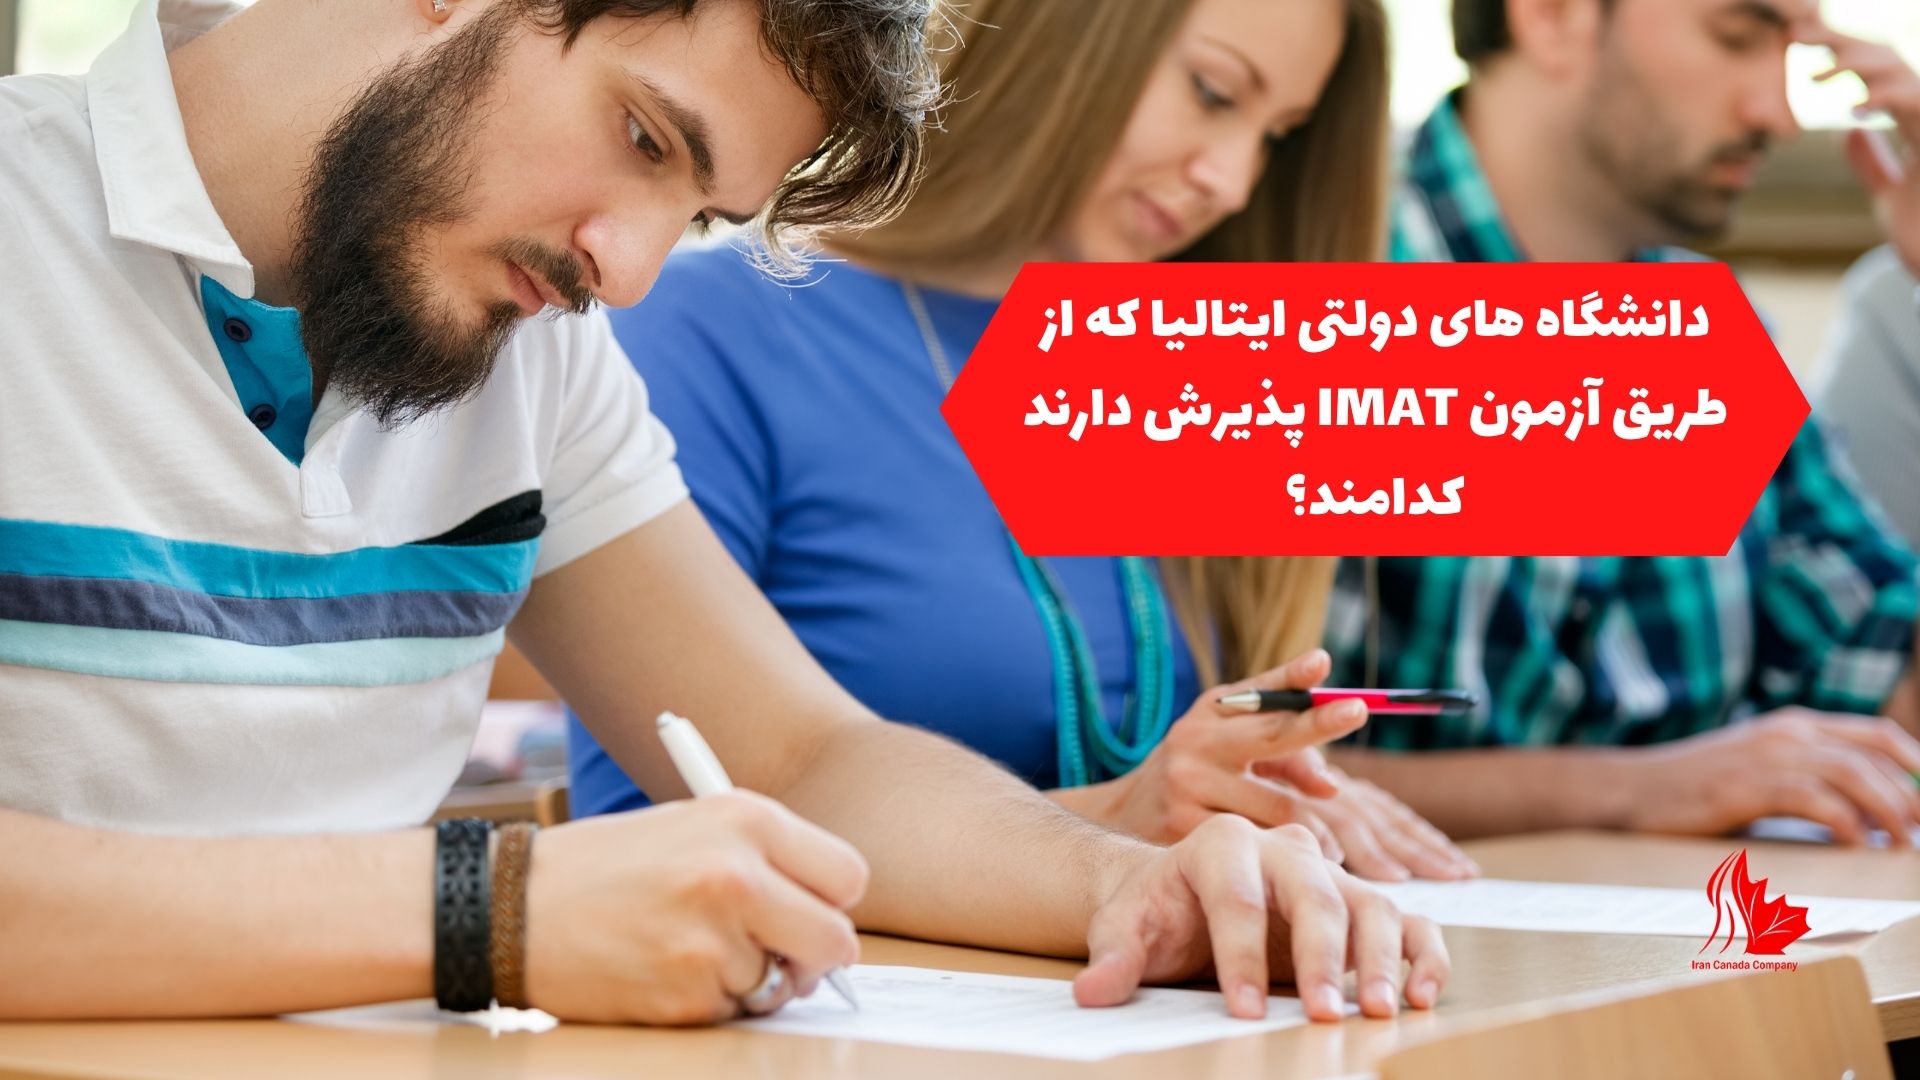 دانشگاه های دولتی ایتالیا که از طریق آزمون IMAT پذیرش دارند، کدامند؟